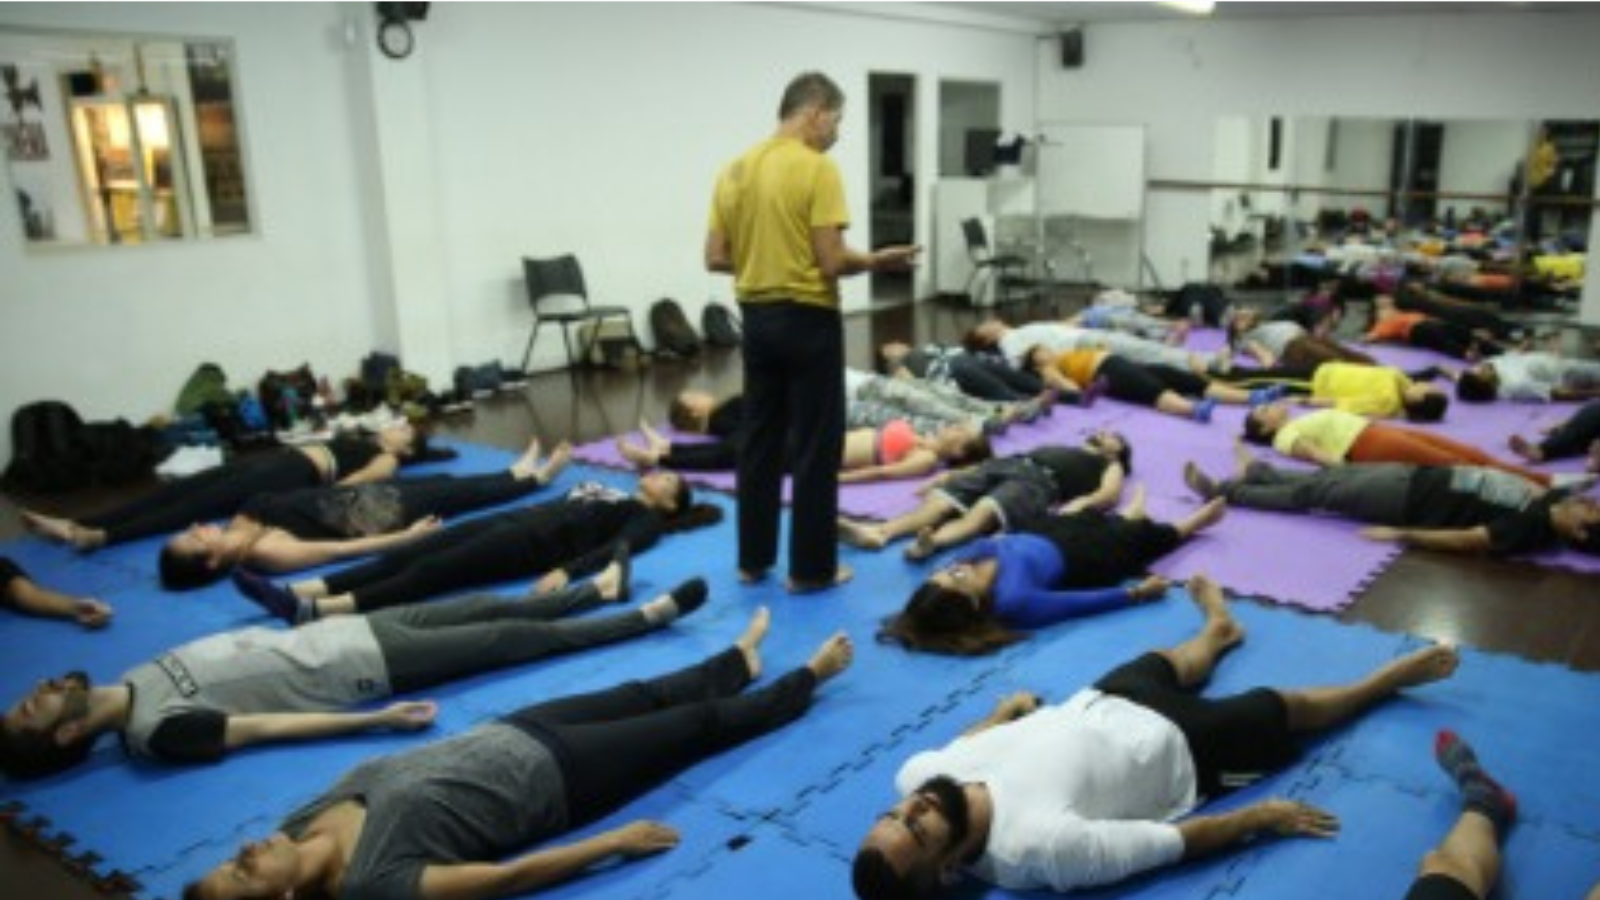 Foto colorida mostrando pessoas deitadas no tatame fazendo uma prática de Feldenkrais e o condutor no meio deles em pé